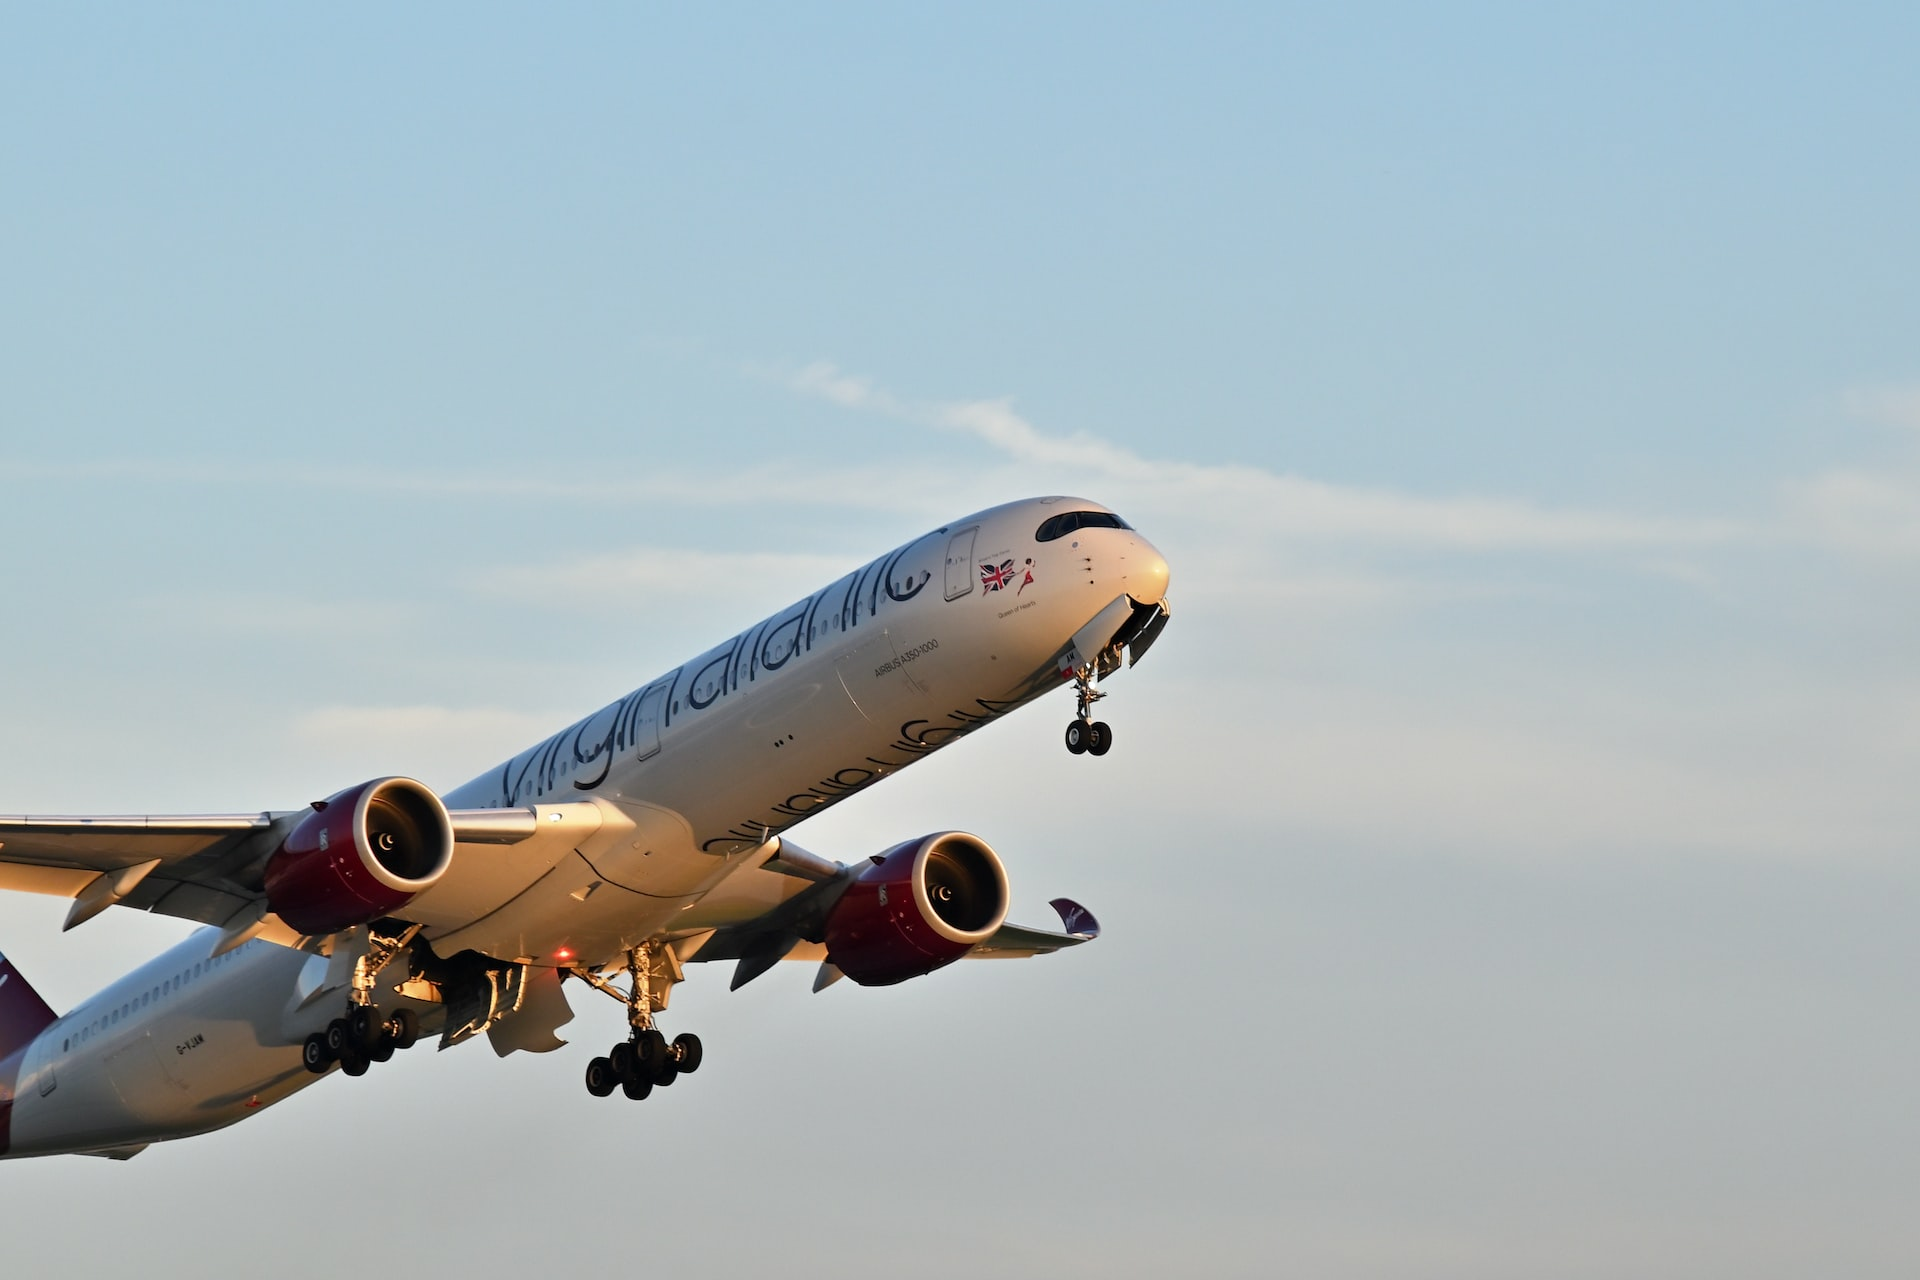 A Virgin Atlantic aircraft in flight.